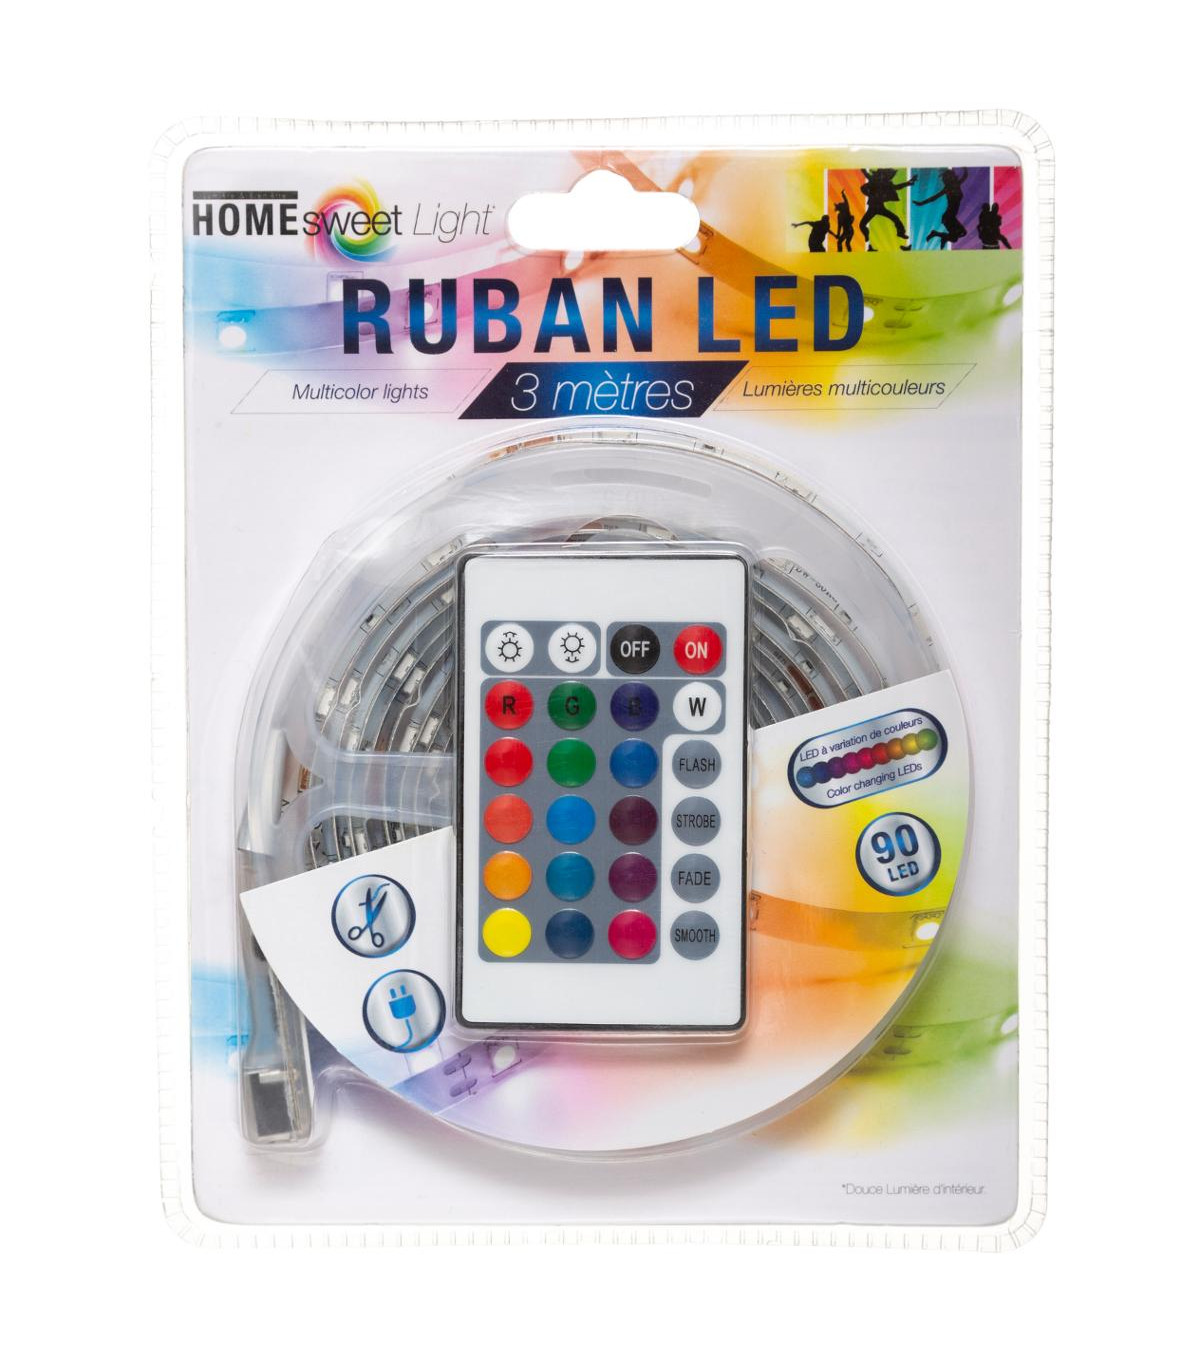 Ruban LED 3M Multicolore + télécommande - Luminaire/Lampe